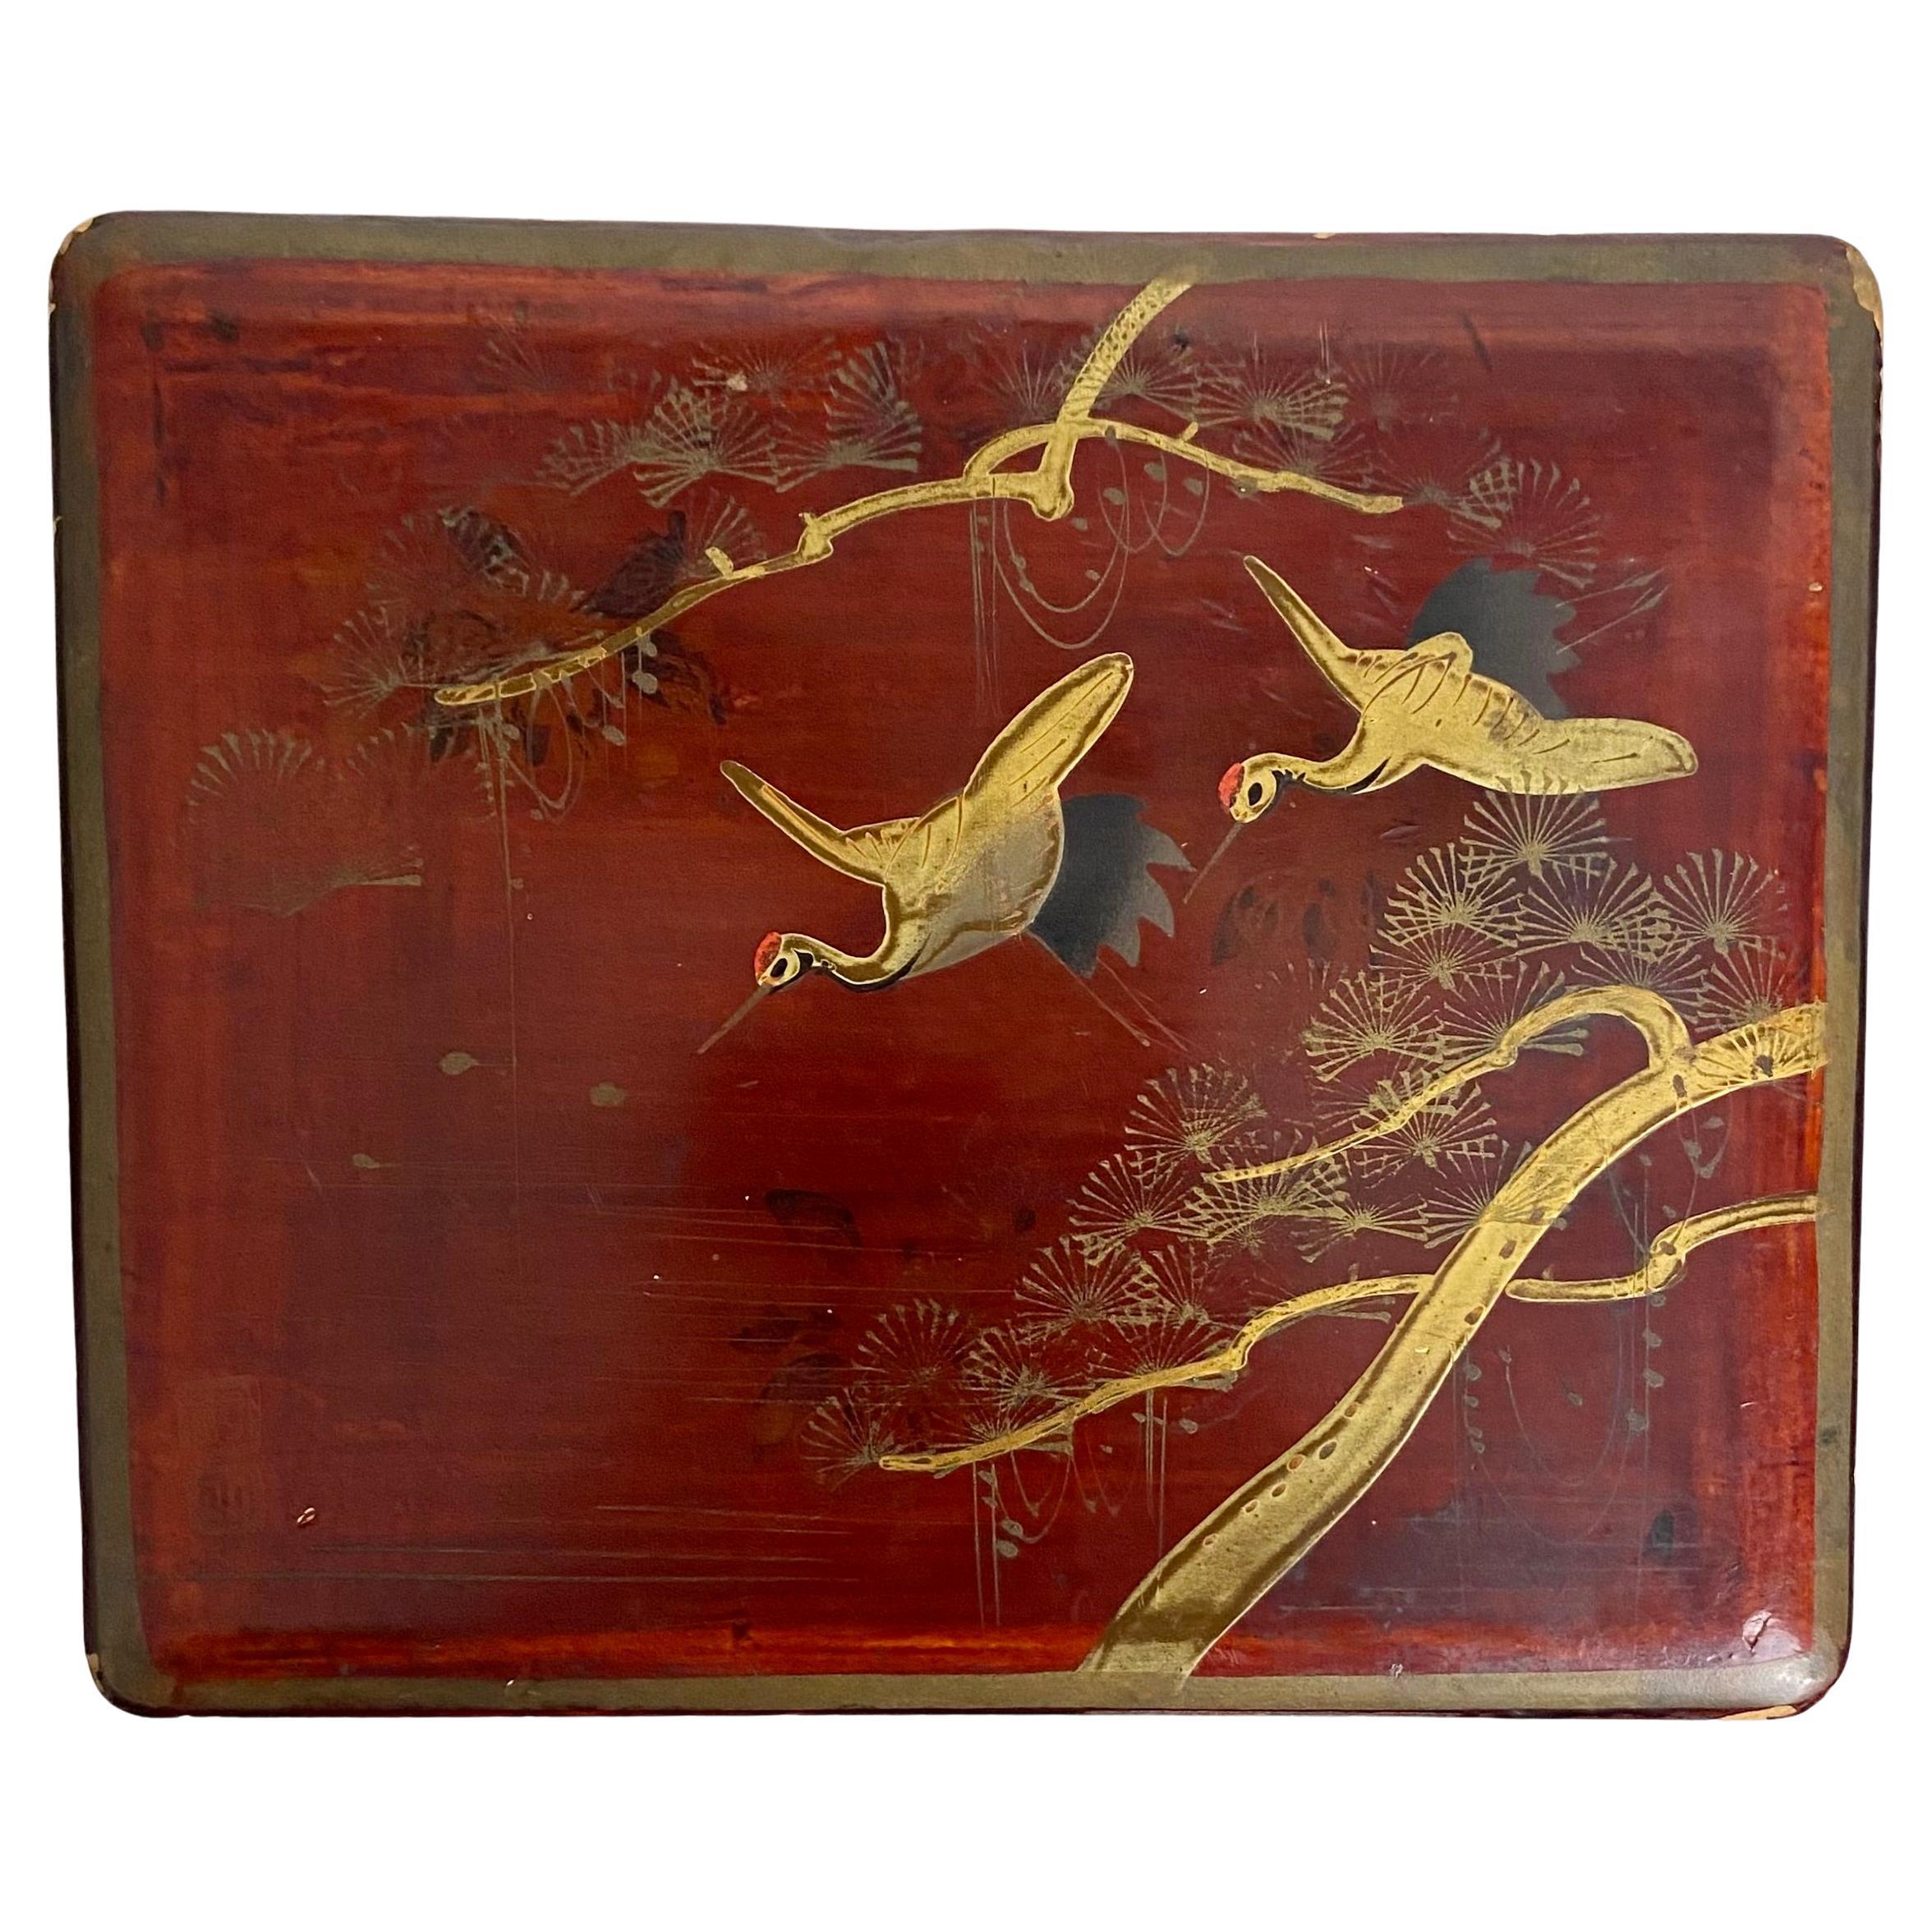 Belle boîte japonaise en bois laqué rouge.
Le couvercle est décoré de hérons dorés et de branches d'arbres en fleurs et signé par l'artiste. Des fleurs noires sont peintes autour de la boîte.
L'intérieur de la boîte est recouvert d'une peinture